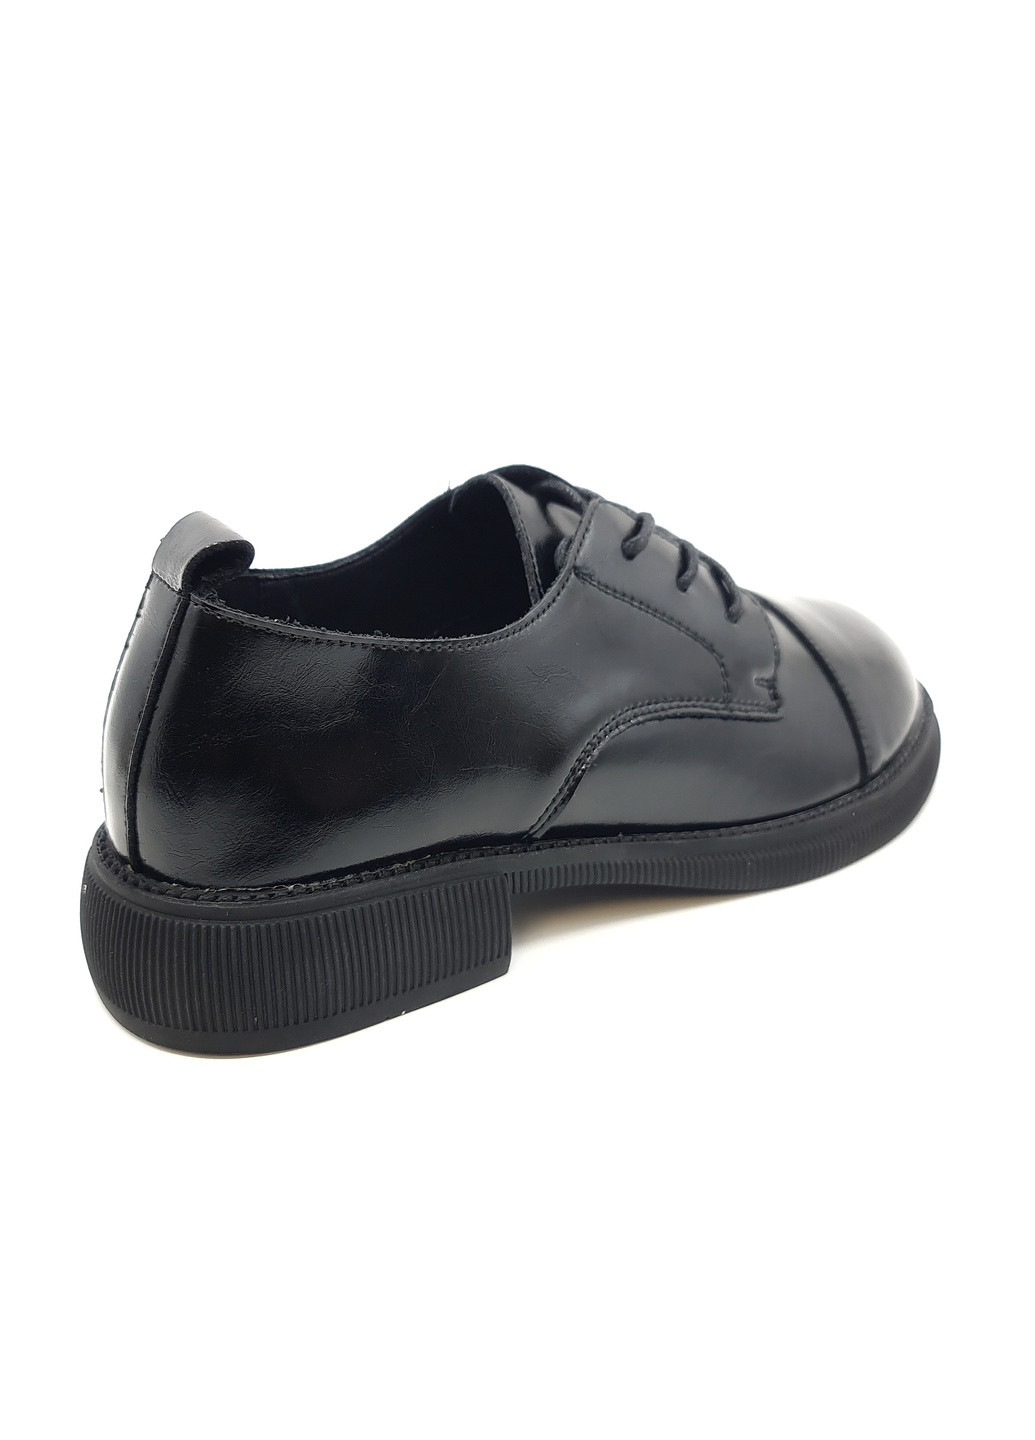 Женские туфли черные кожаные YA-16-1 23 см (р) Yalasou